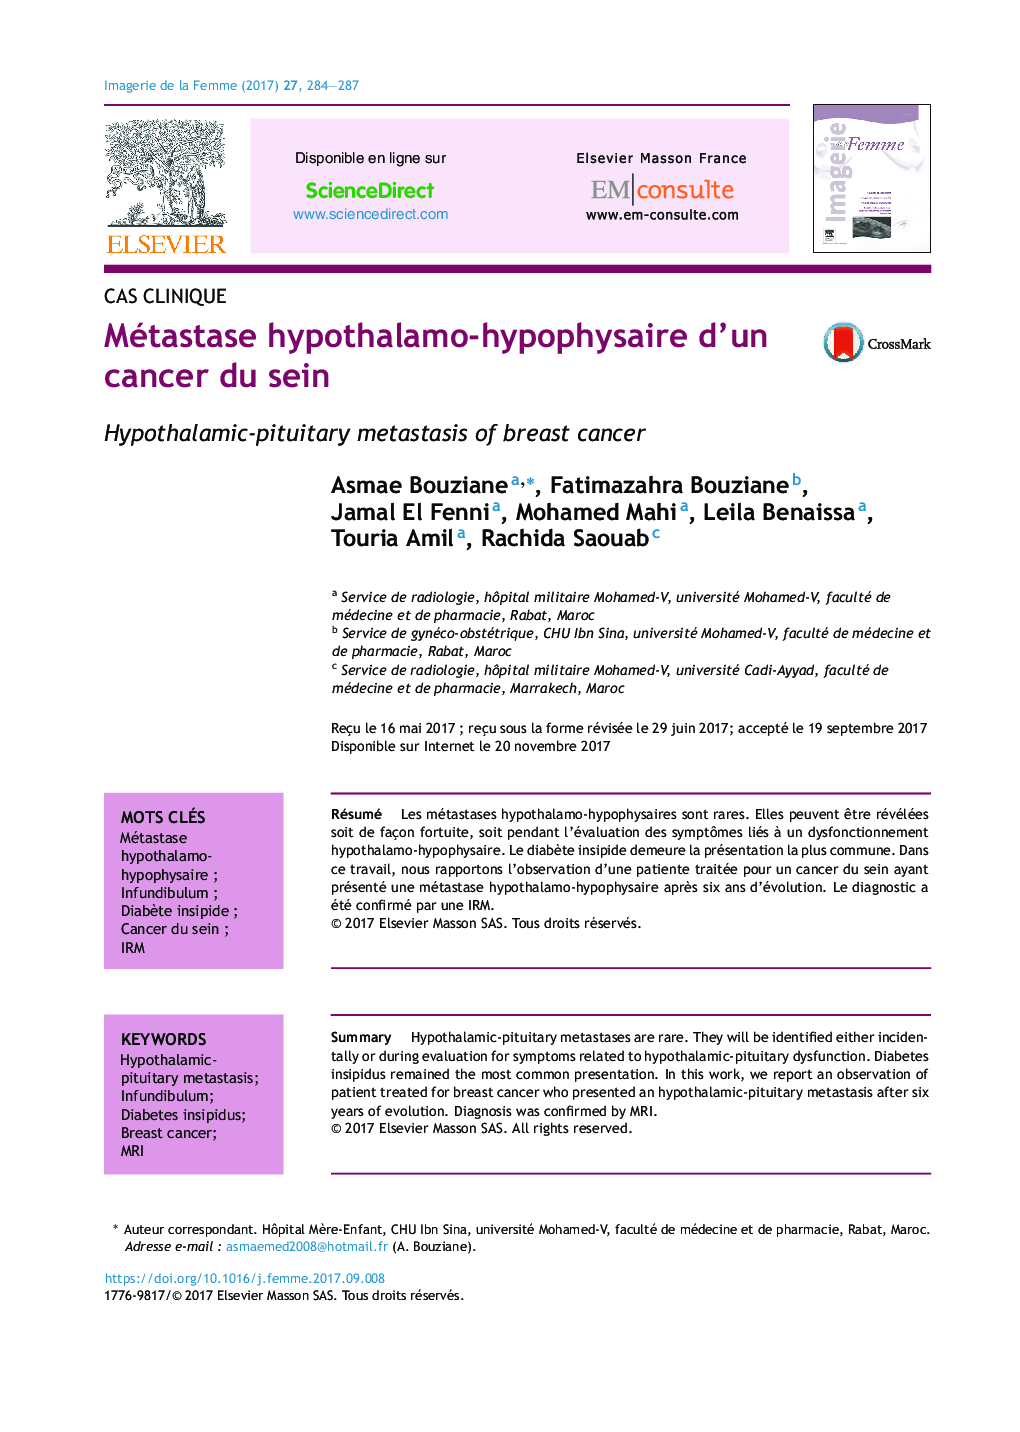 Métastase hypothalamo-hypophysaire d'un cancer du sein